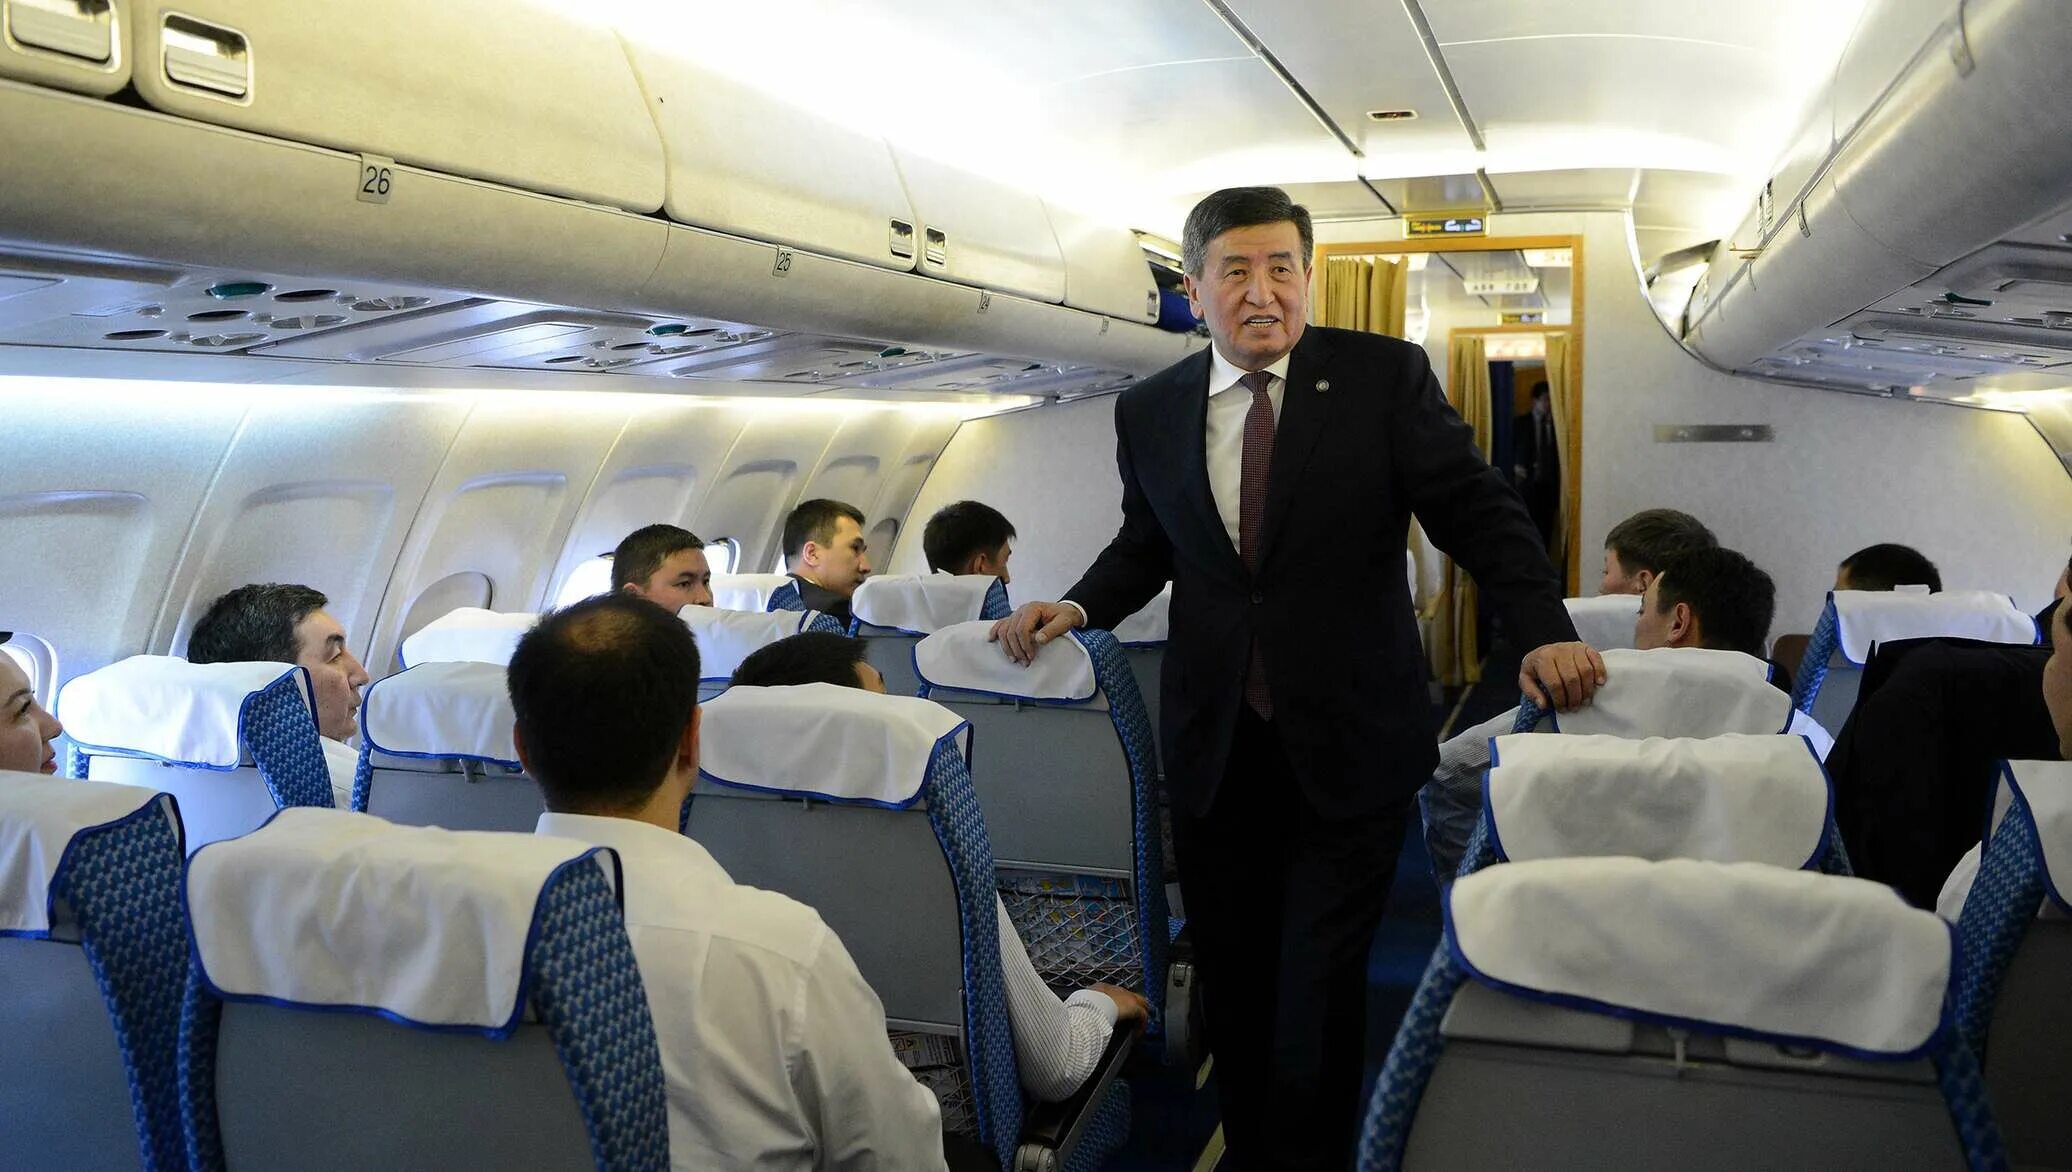 Самолёт президента Киргизии. Самолет приздиинт Кыргызстан. Киргиз в самолёте.